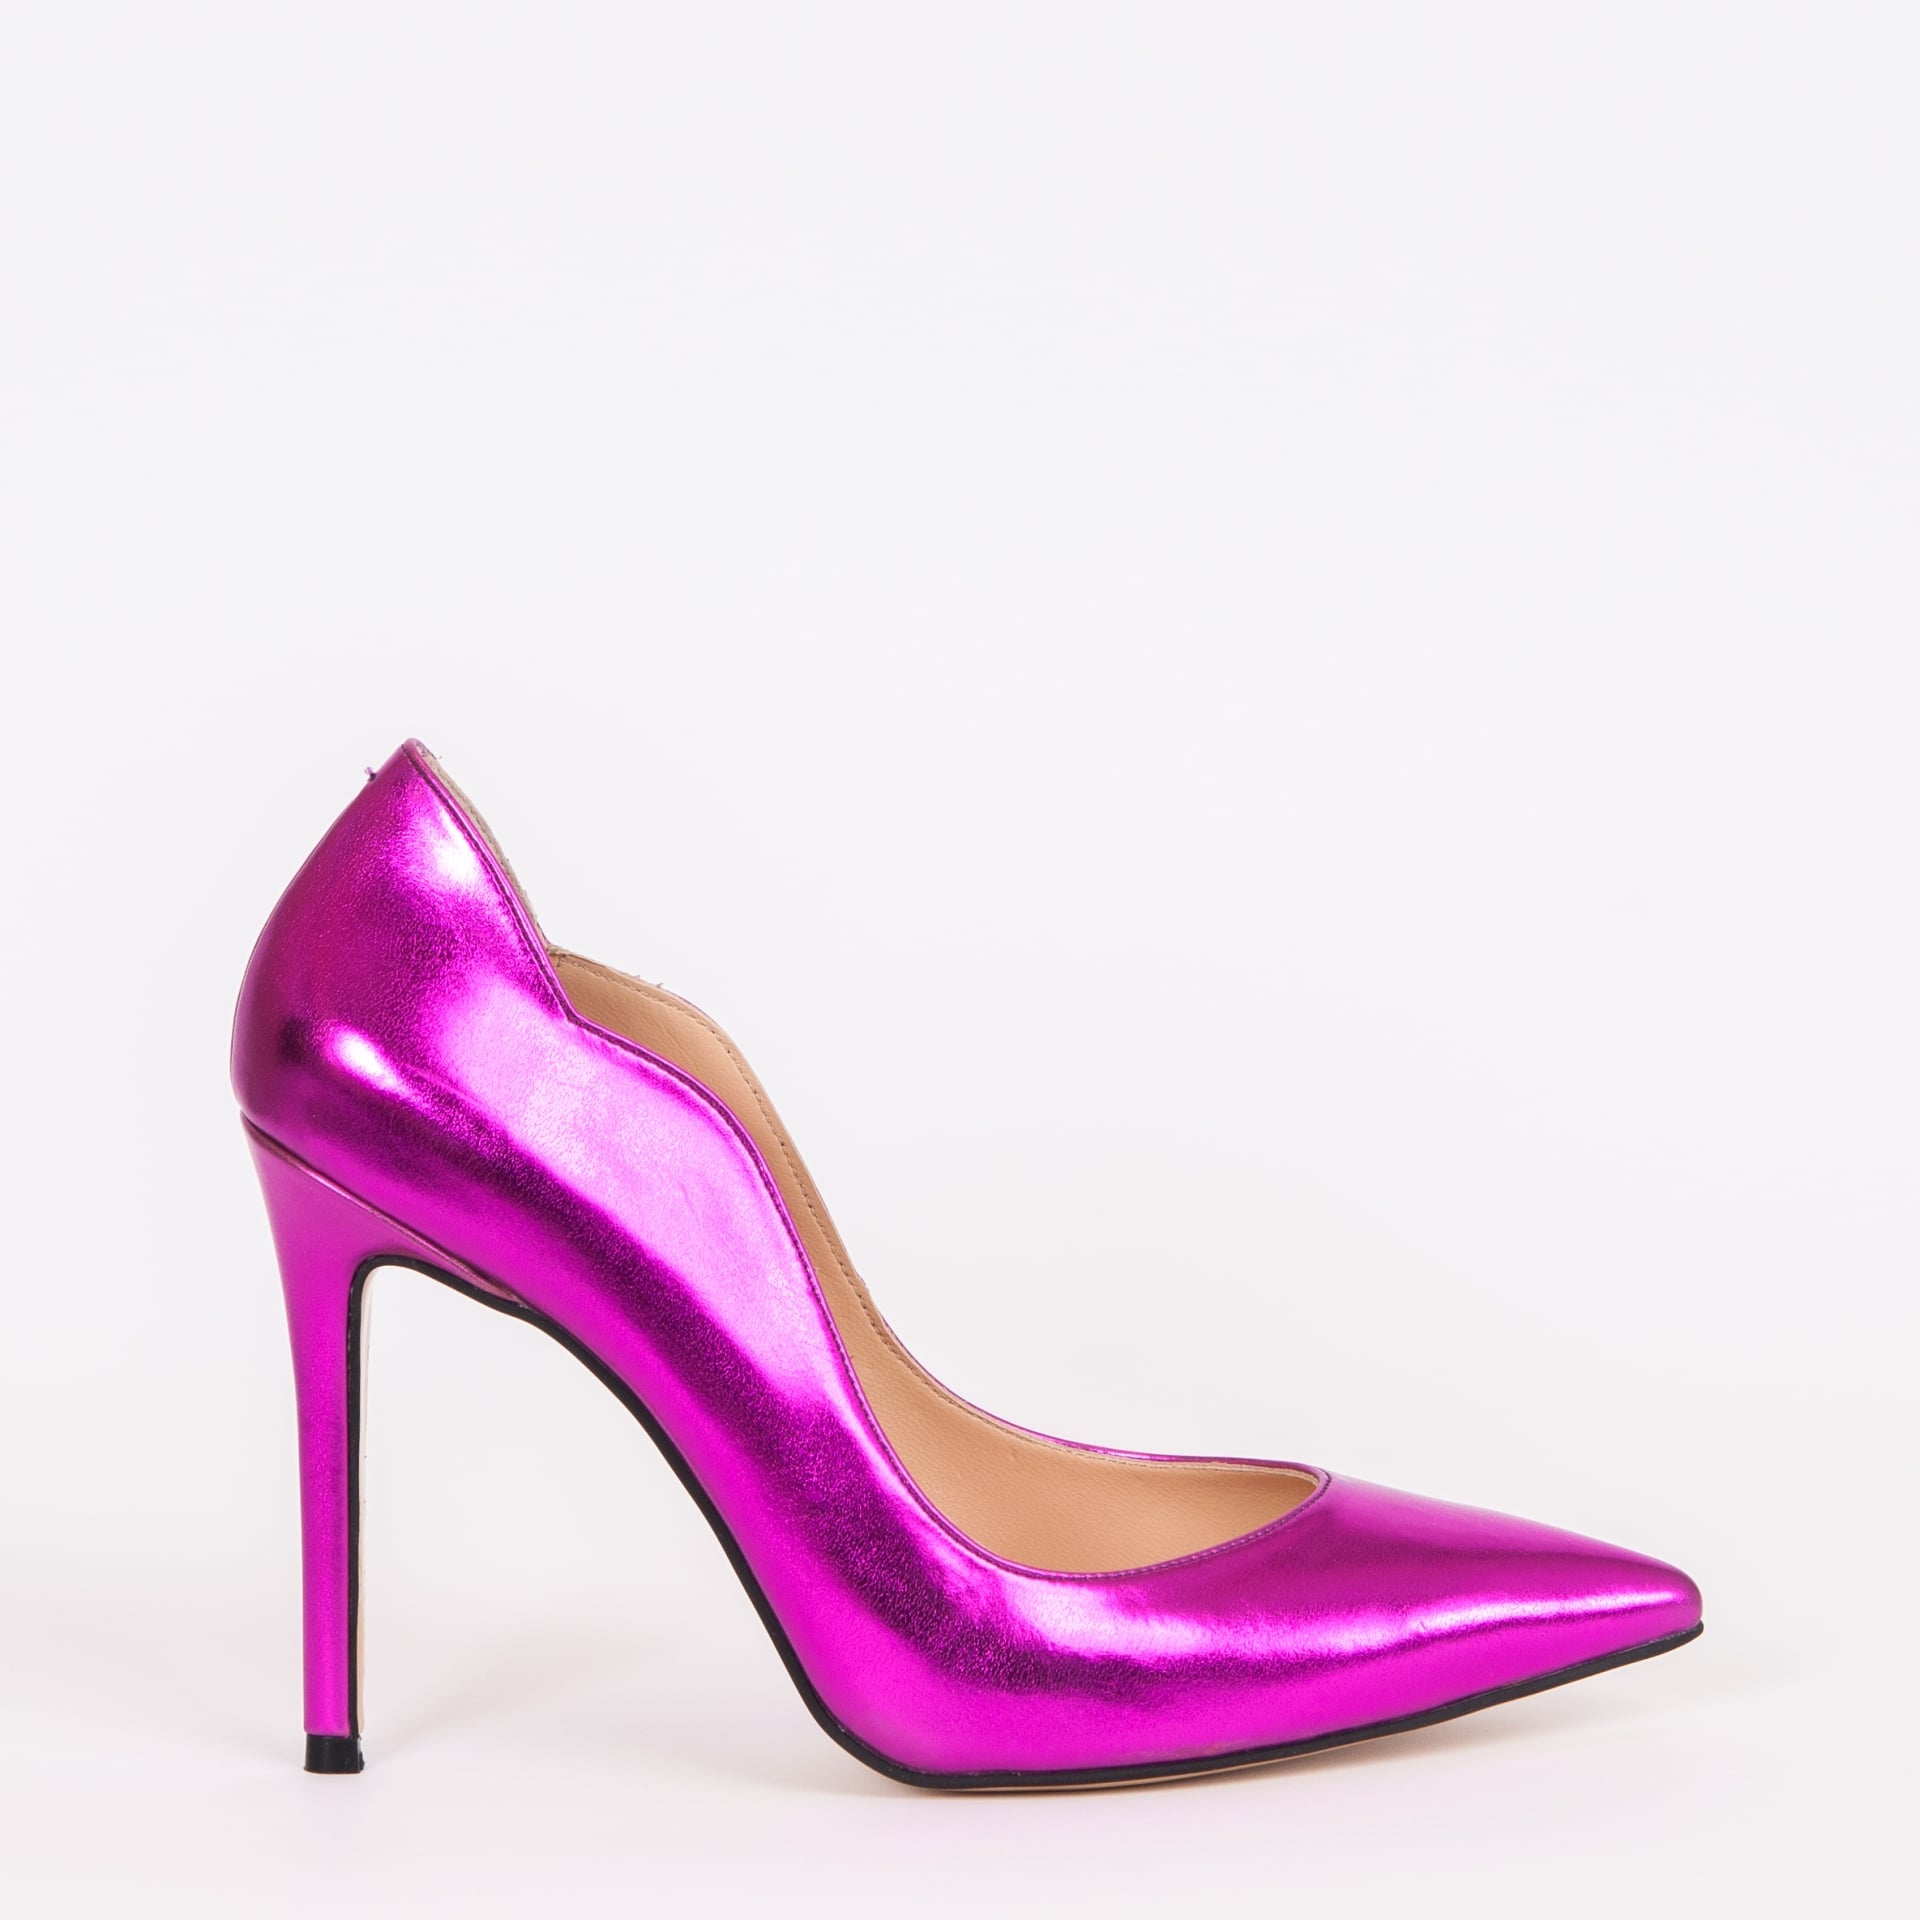 Дамски обувки LOVE NEON цвят фуксия 105 мм.